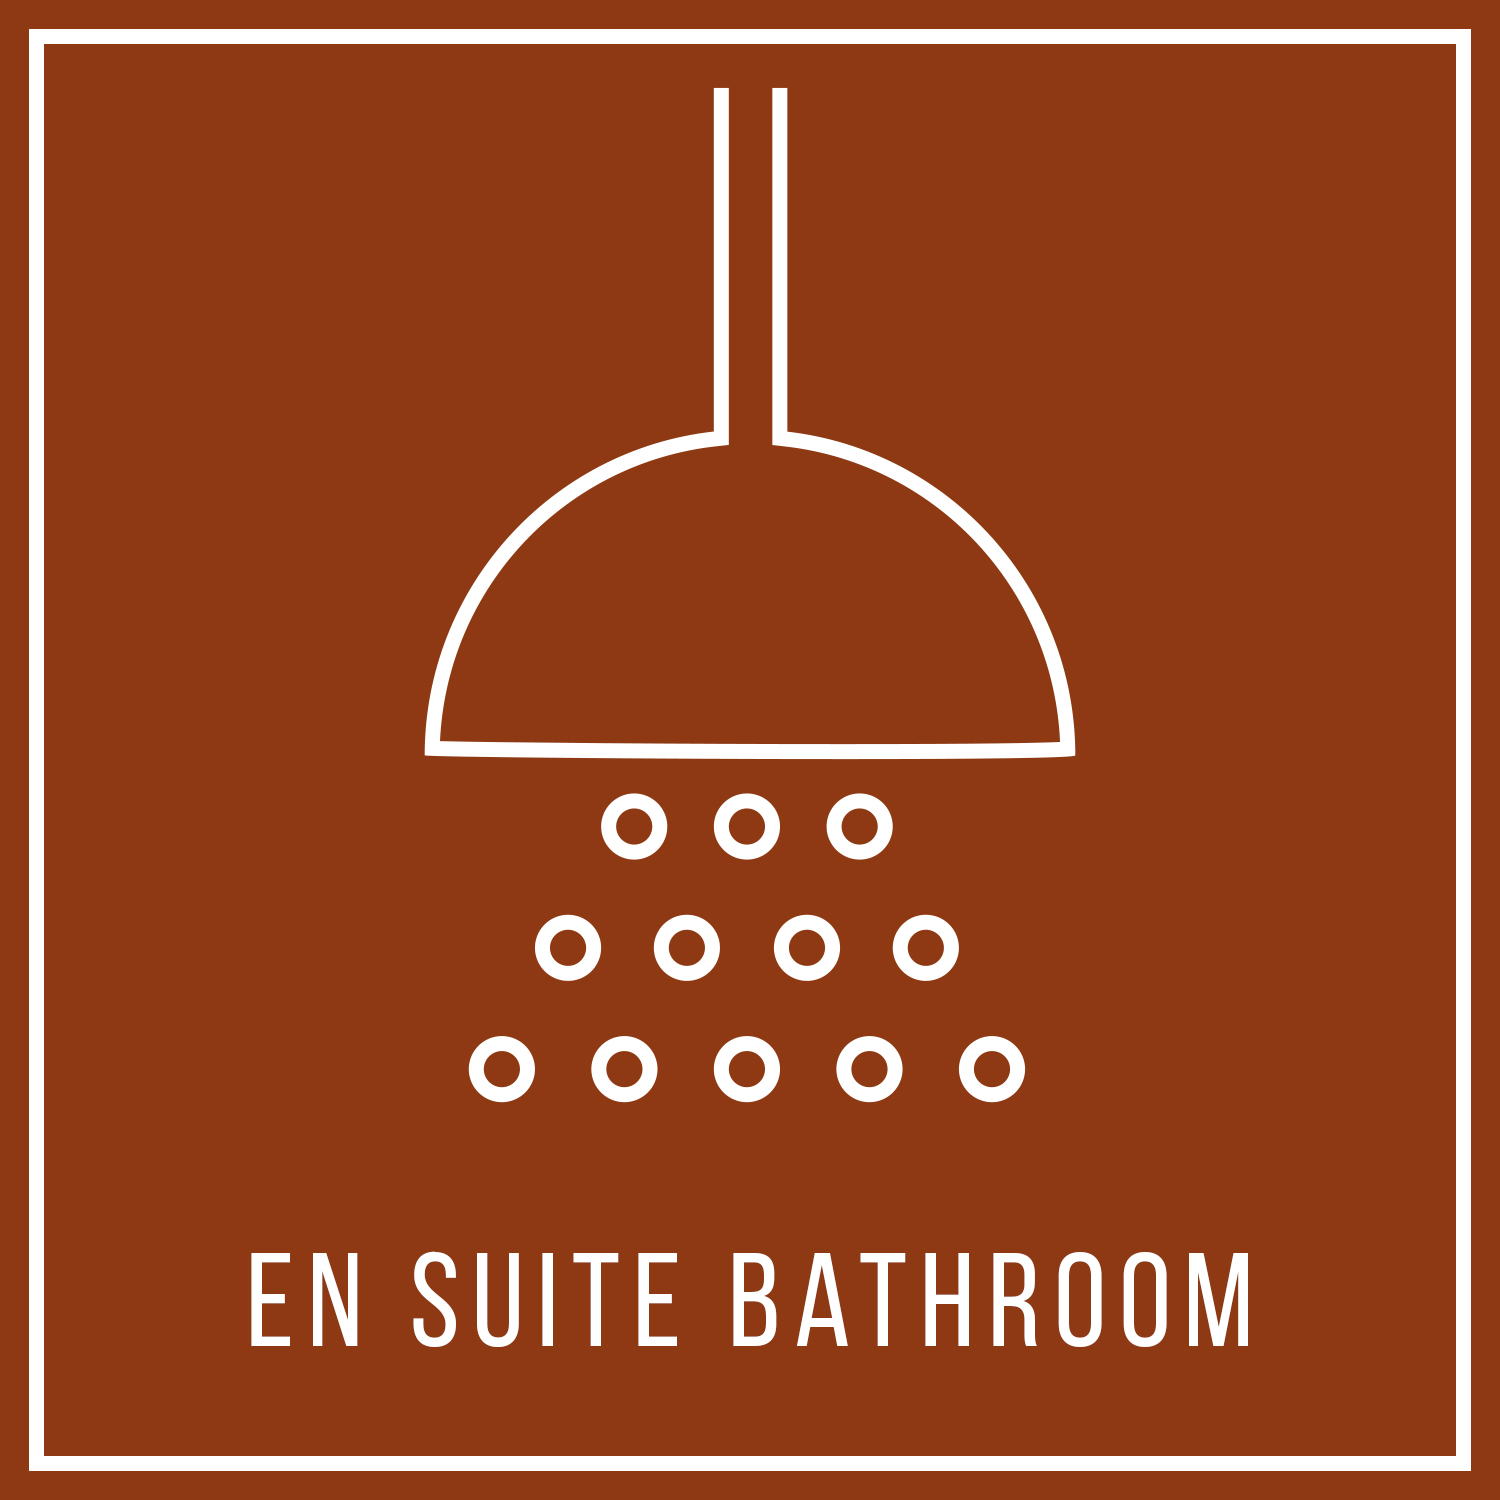 aya-kapadokya-room-features-atelier-suite-square-en-suite-bathroom